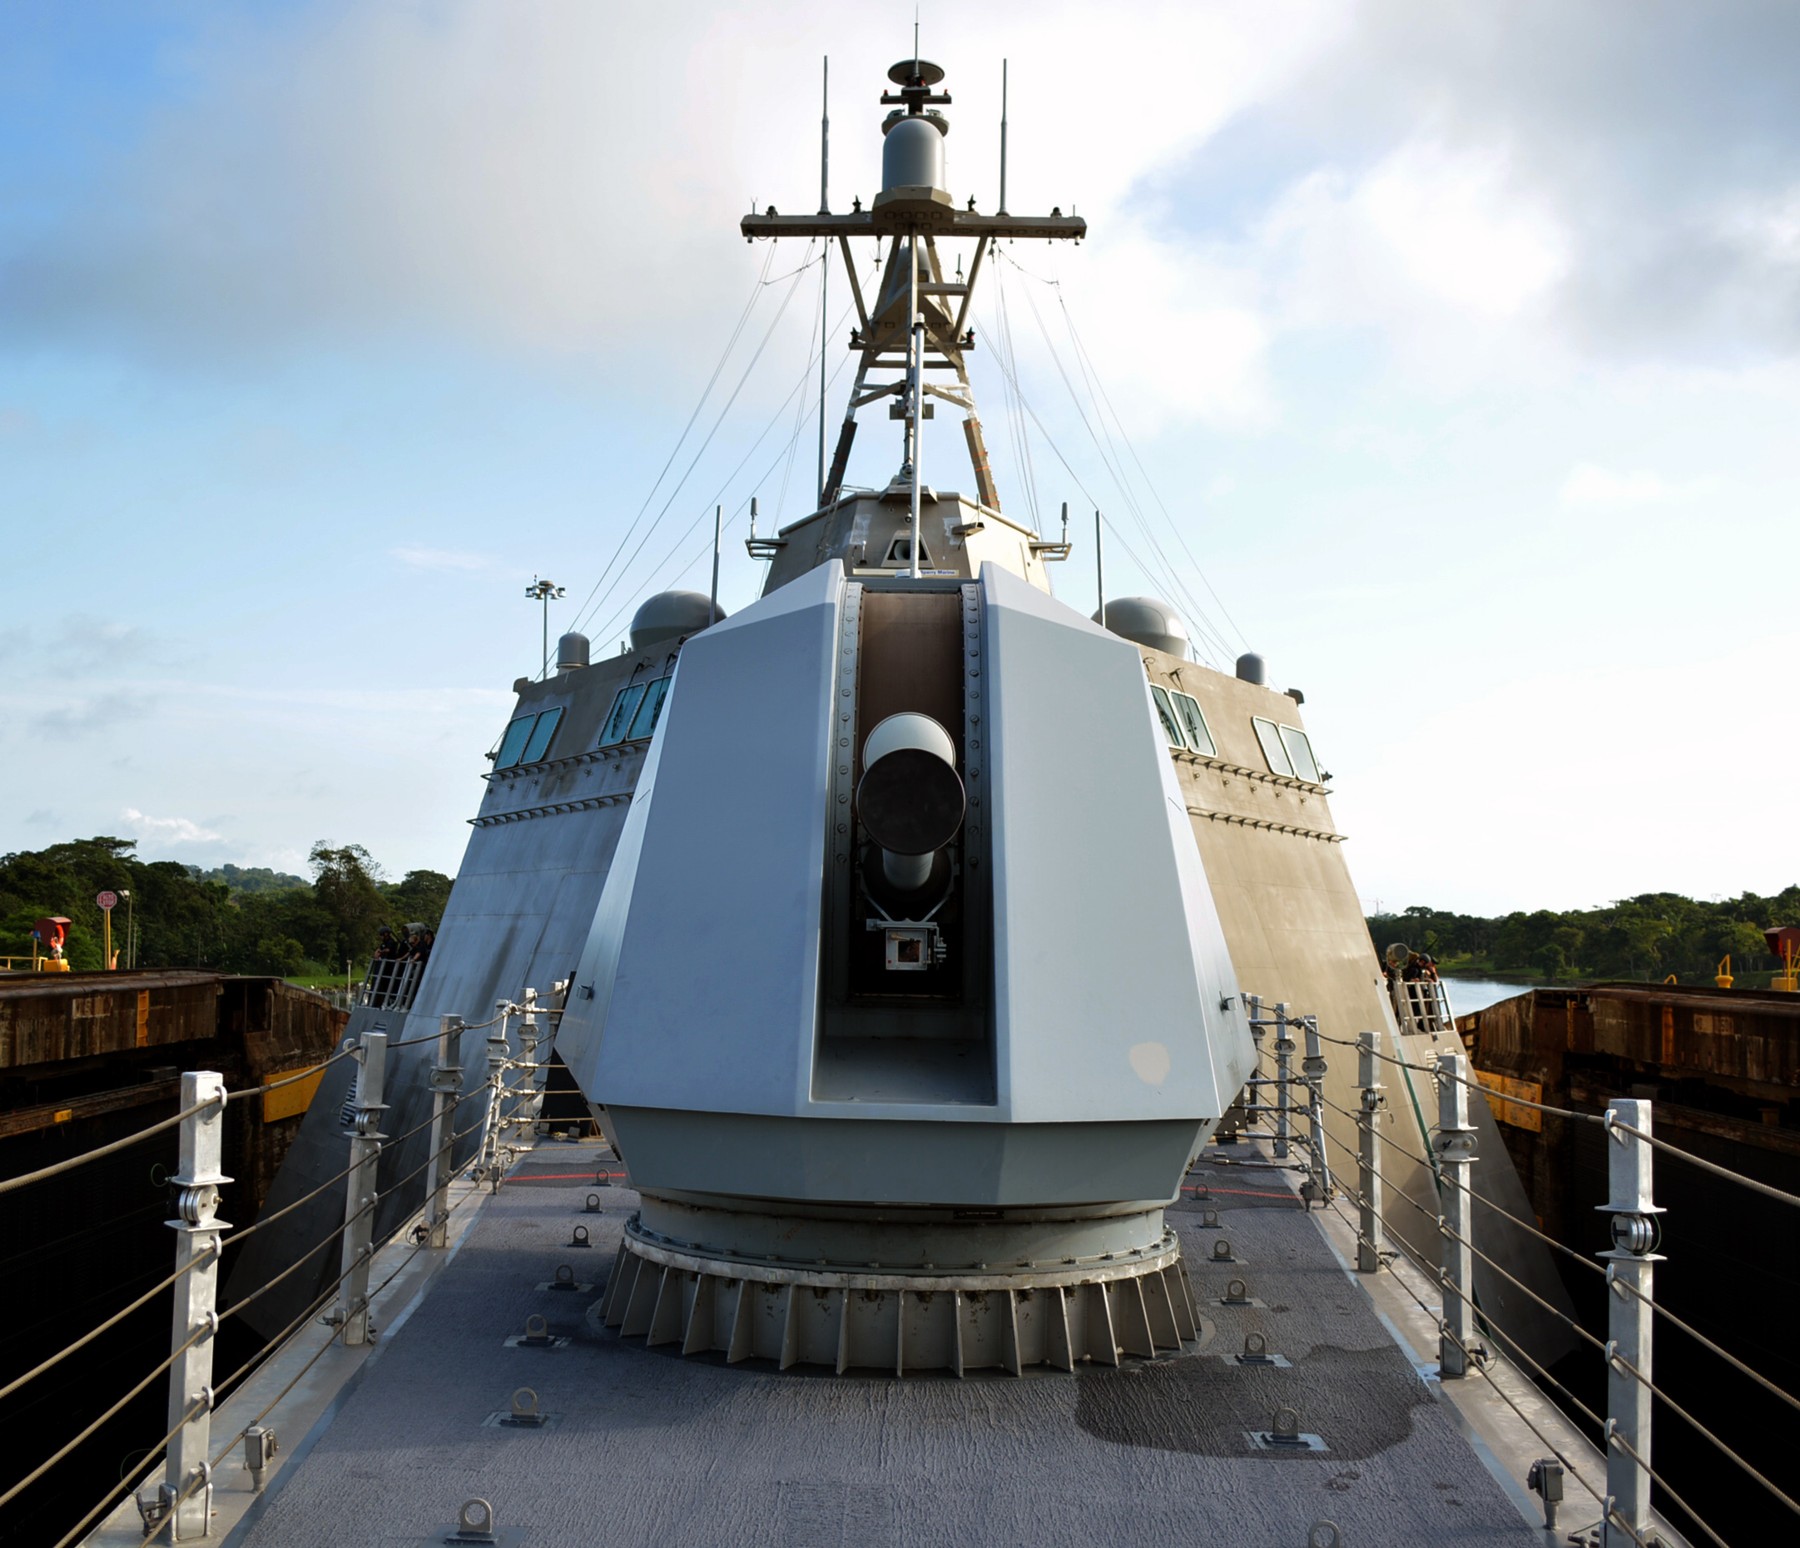 lcs-6 uss jackson independence class littoral combat ship us navy 17 panama canal gatun